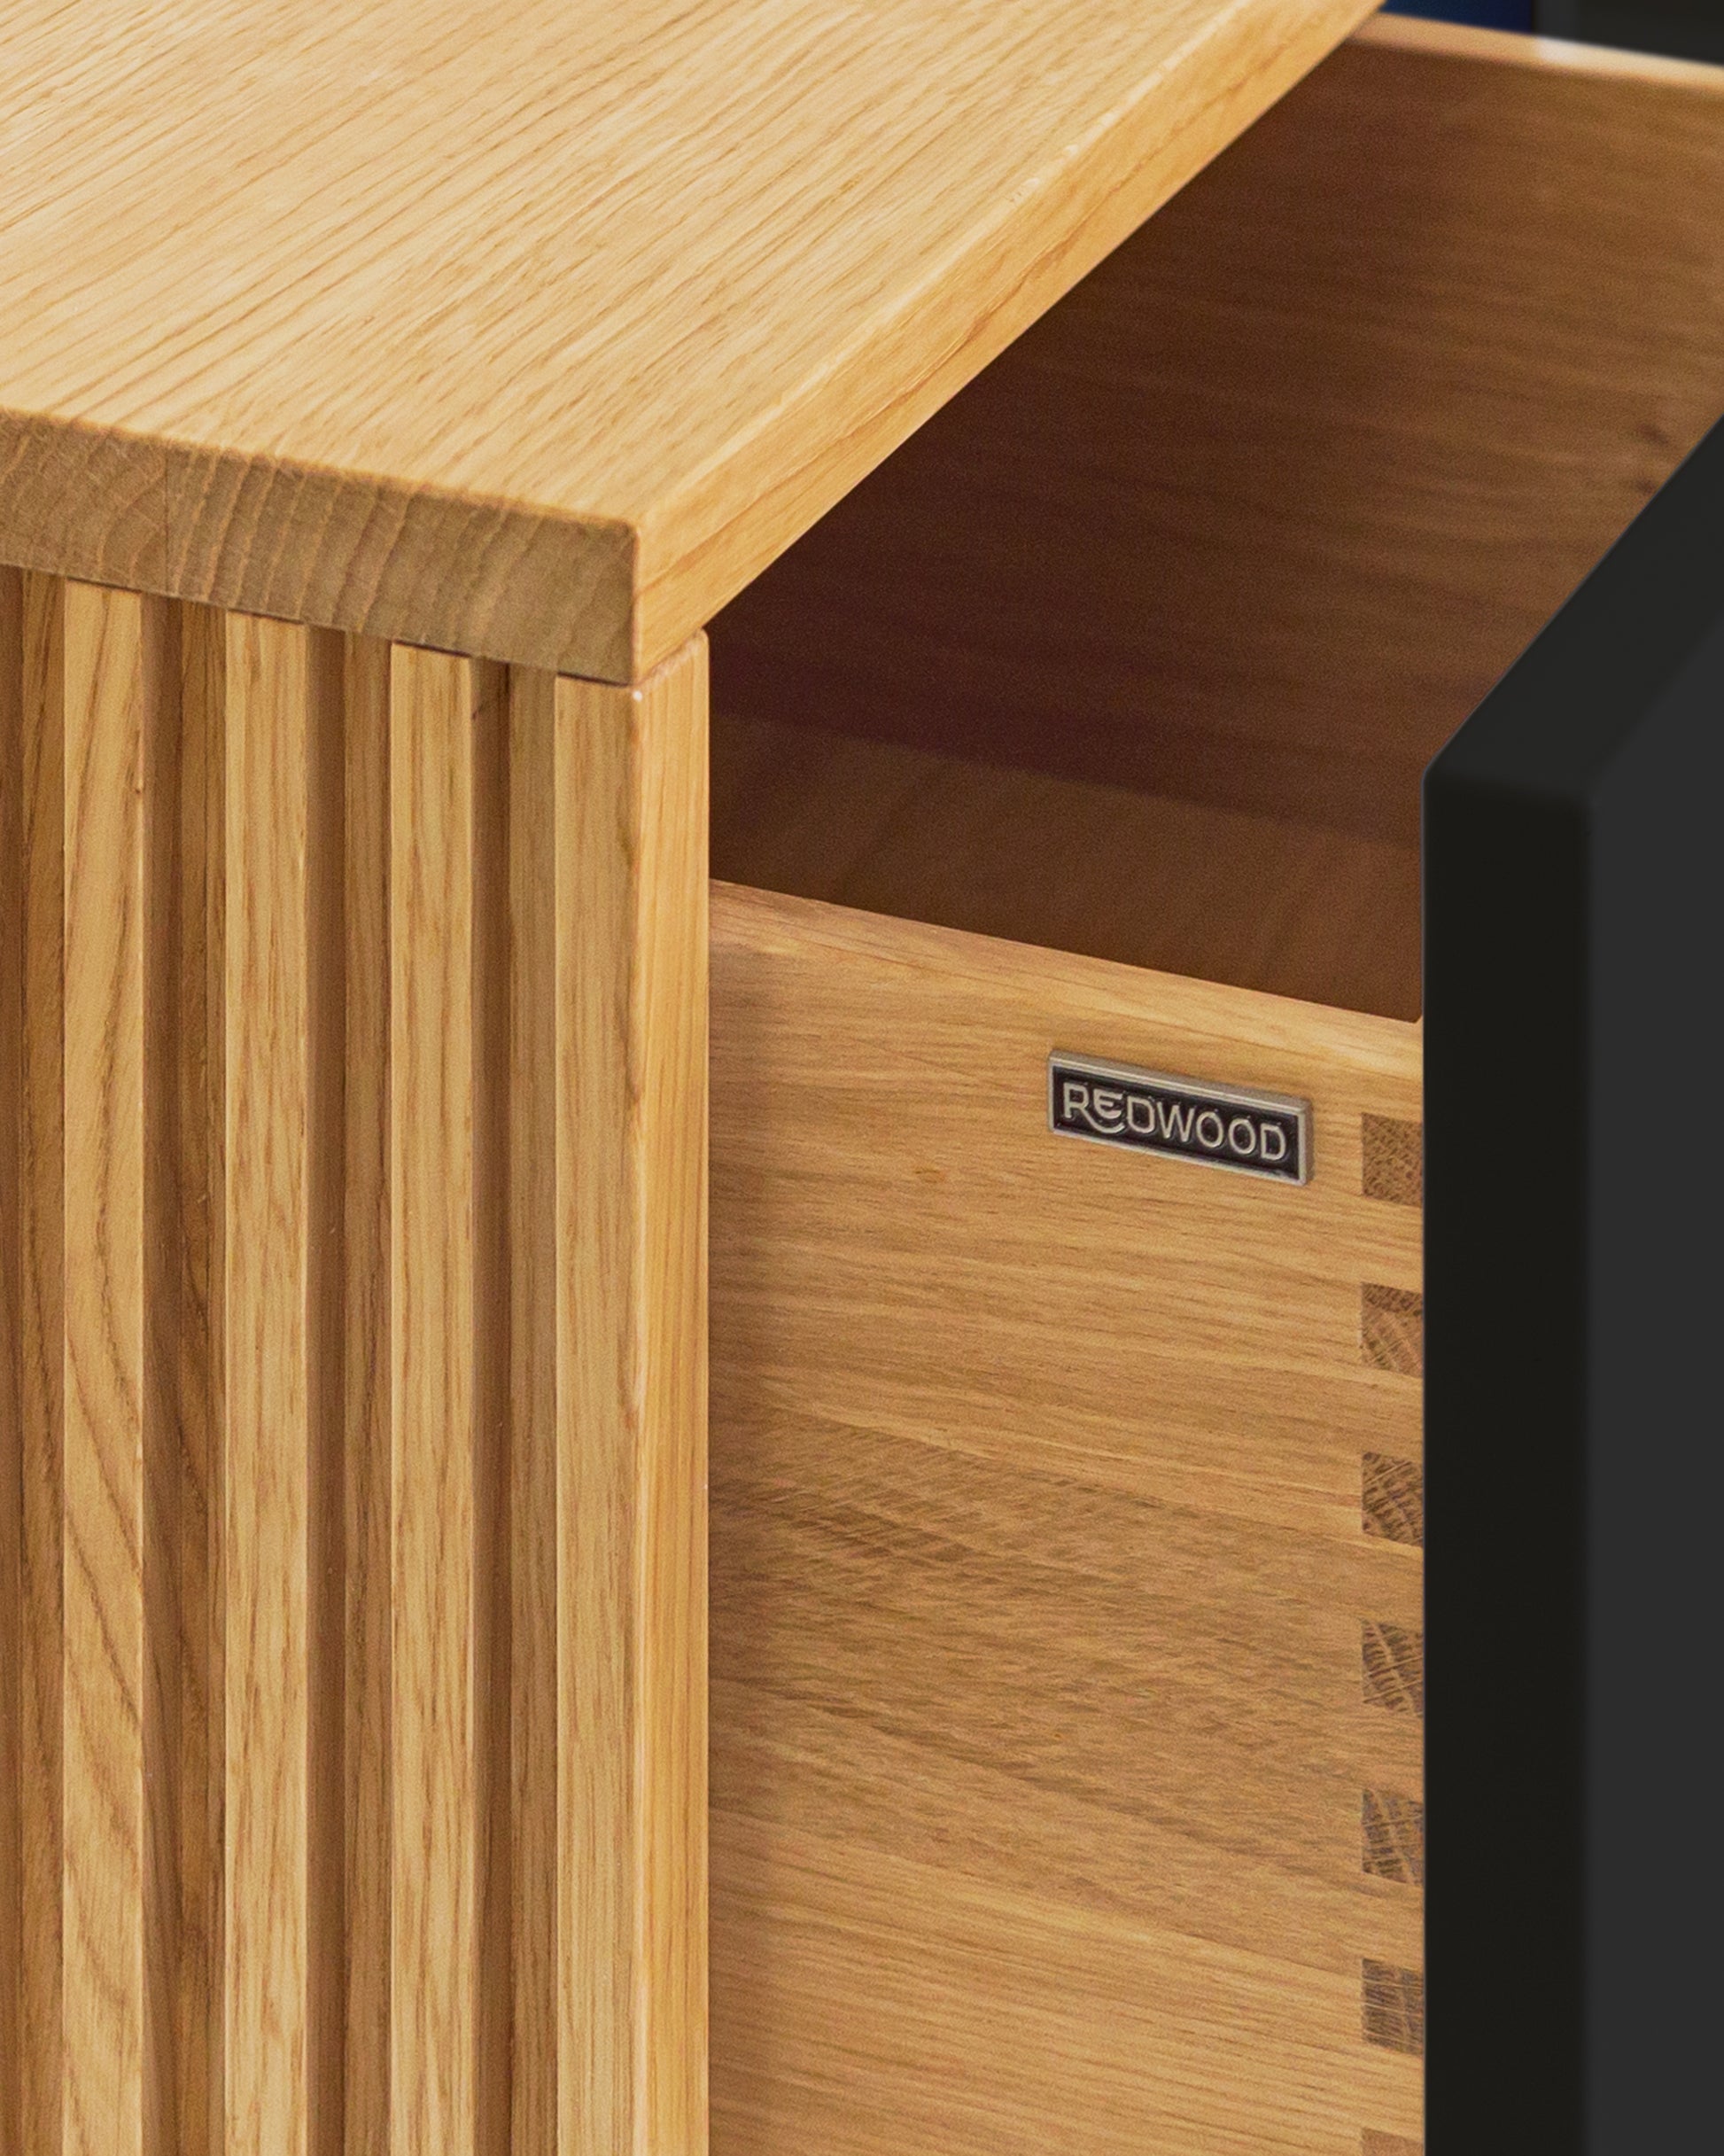 Nachttisch in Eiche und schwarzen Fronten mit Schubladen:Schubladen in Massivholz:Die Verwendung von Massivholz für die Schubladen und die unterseitige (also nicht sichtbare) Befestigung der Auszüge sorgen nicht nur für ein hochwertiges Design, sondern auch für maximale Stabilität und Langlebigkeit.